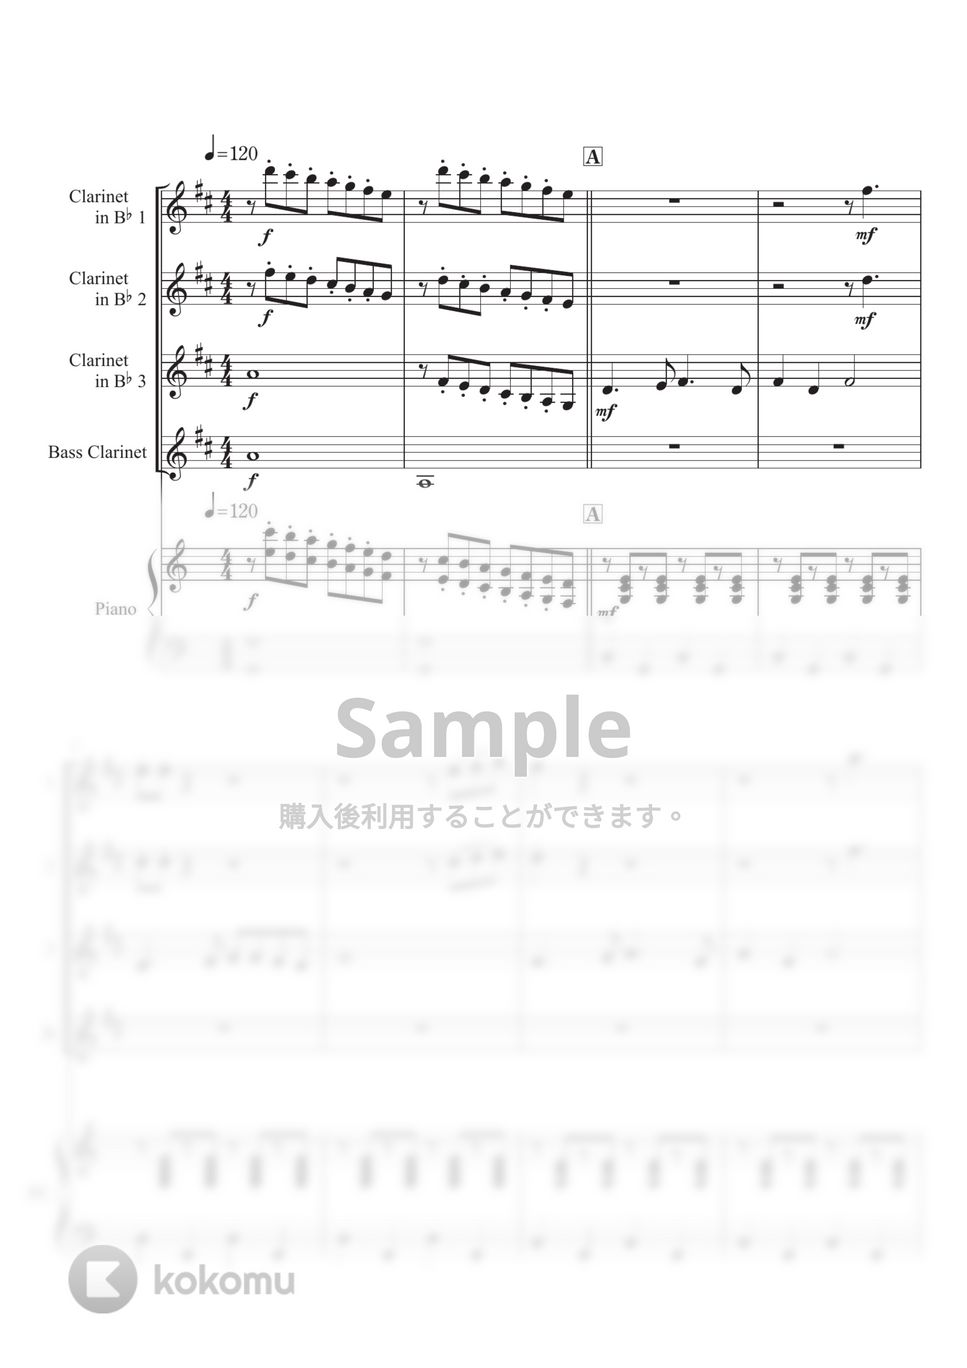 Richard Rodgers - 【クラリネット四重奏&ピアノ】ドレミのうた (『サウンド・オブ・ミュージック』より) by 栗原義継